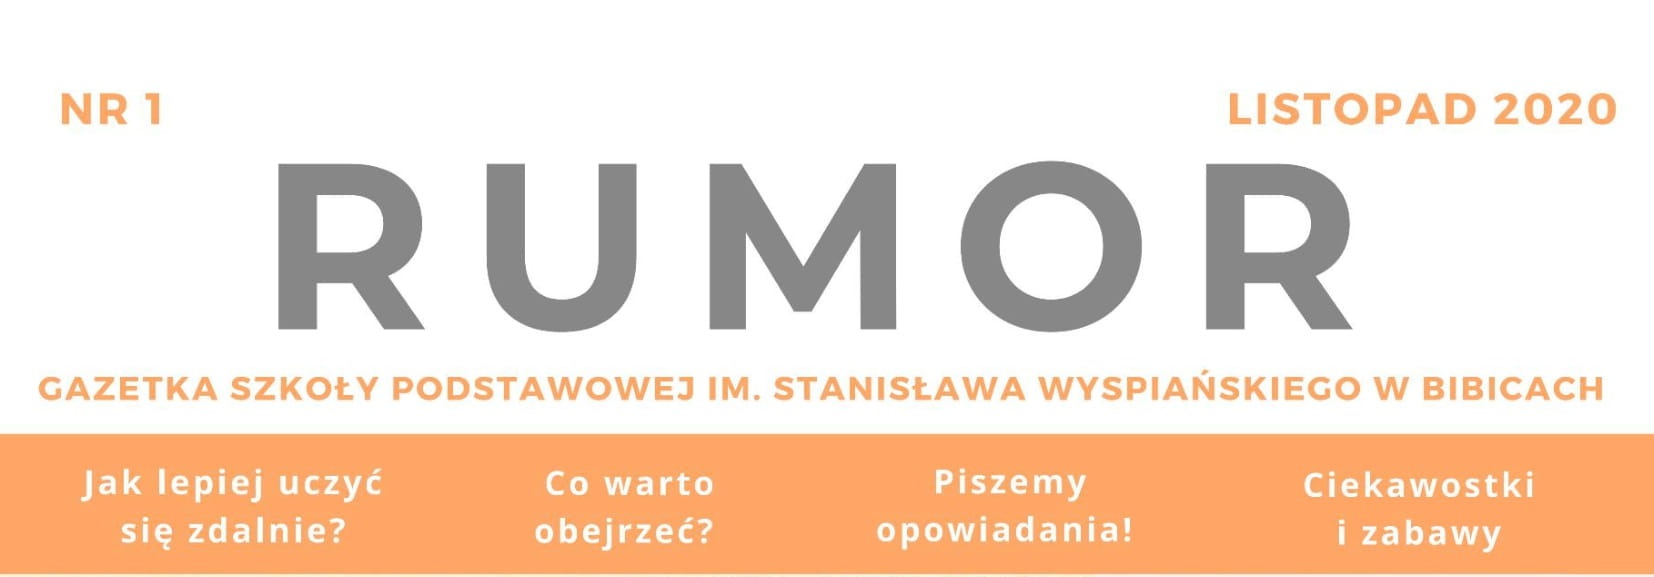 Gazetka szkolna RUMOR Numer 1 1/2020 „Wydanie listopadowe”